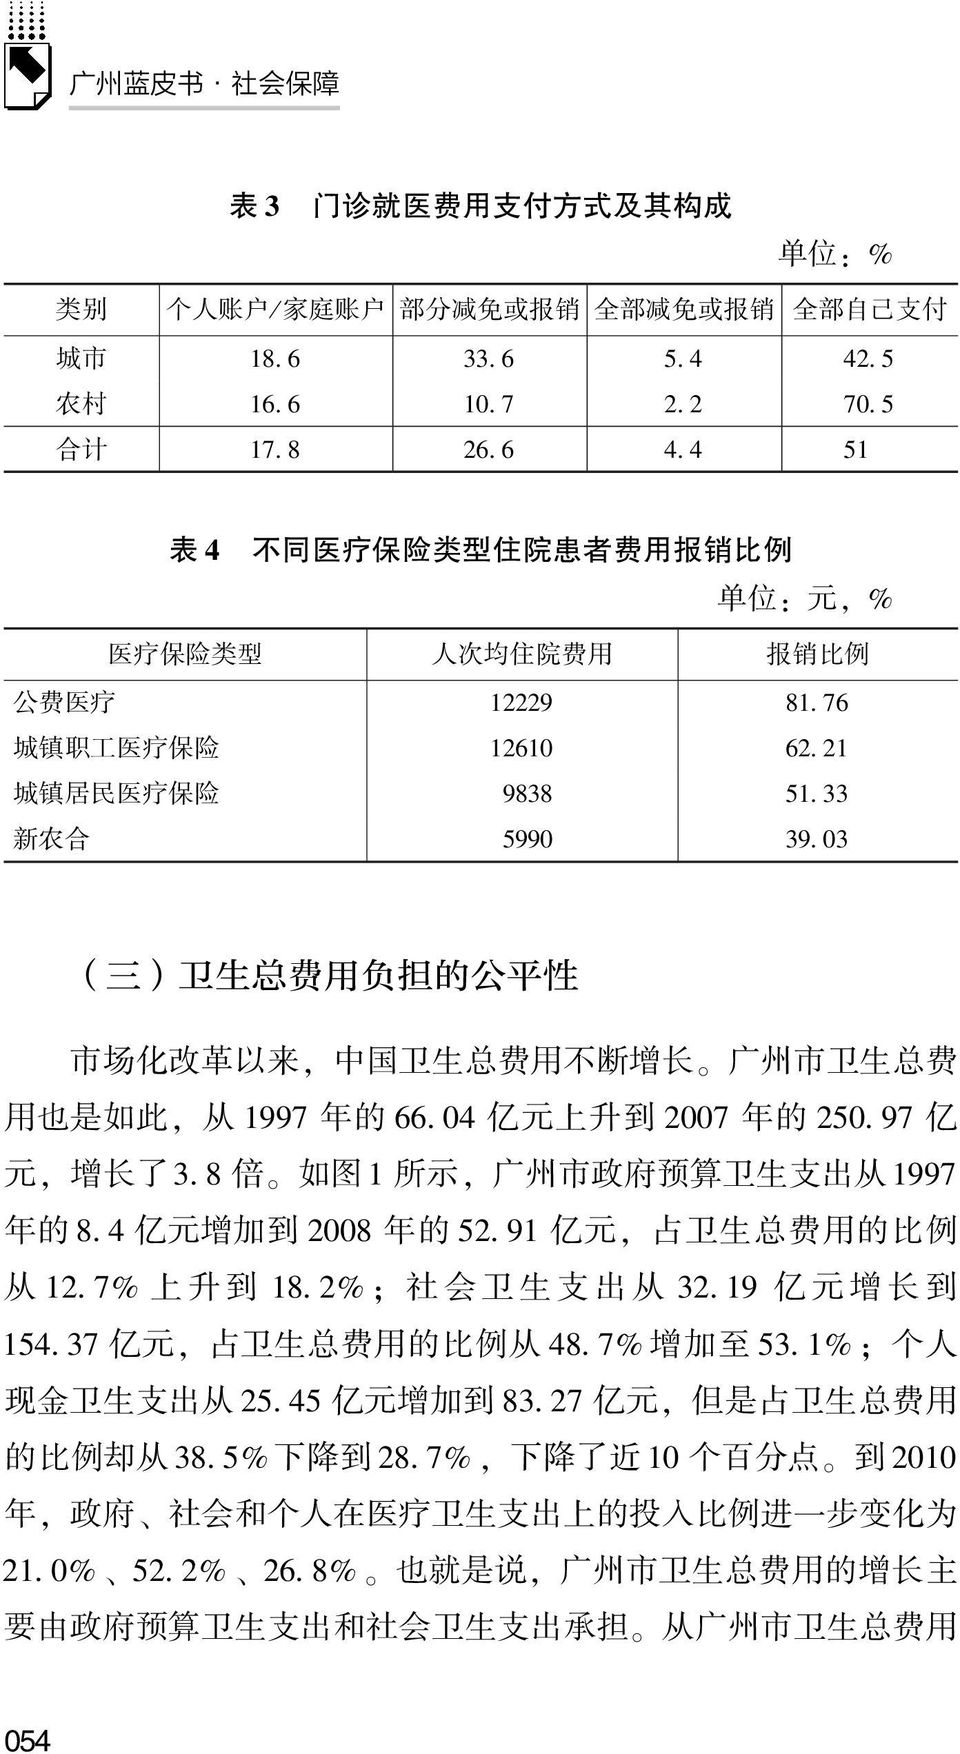 改 革 以 来, 中 国 卫 生 总 费 用 不 断 增 长 广 州 市 卫 生 总 费 用 也 是 如 此, 从 1997 年 的 66 04 亿 元 上 升 到 2007 年 的 250 97 亿 元, 增 长 了 3 8 倍 如 图 1 所 示, 广 州 市 政 府 预 算 卫 生 支 出 从 1997 年 的 8 4 亿 元 增 加 到 2008 年 的 52 91 亿 元, 占 卫 生